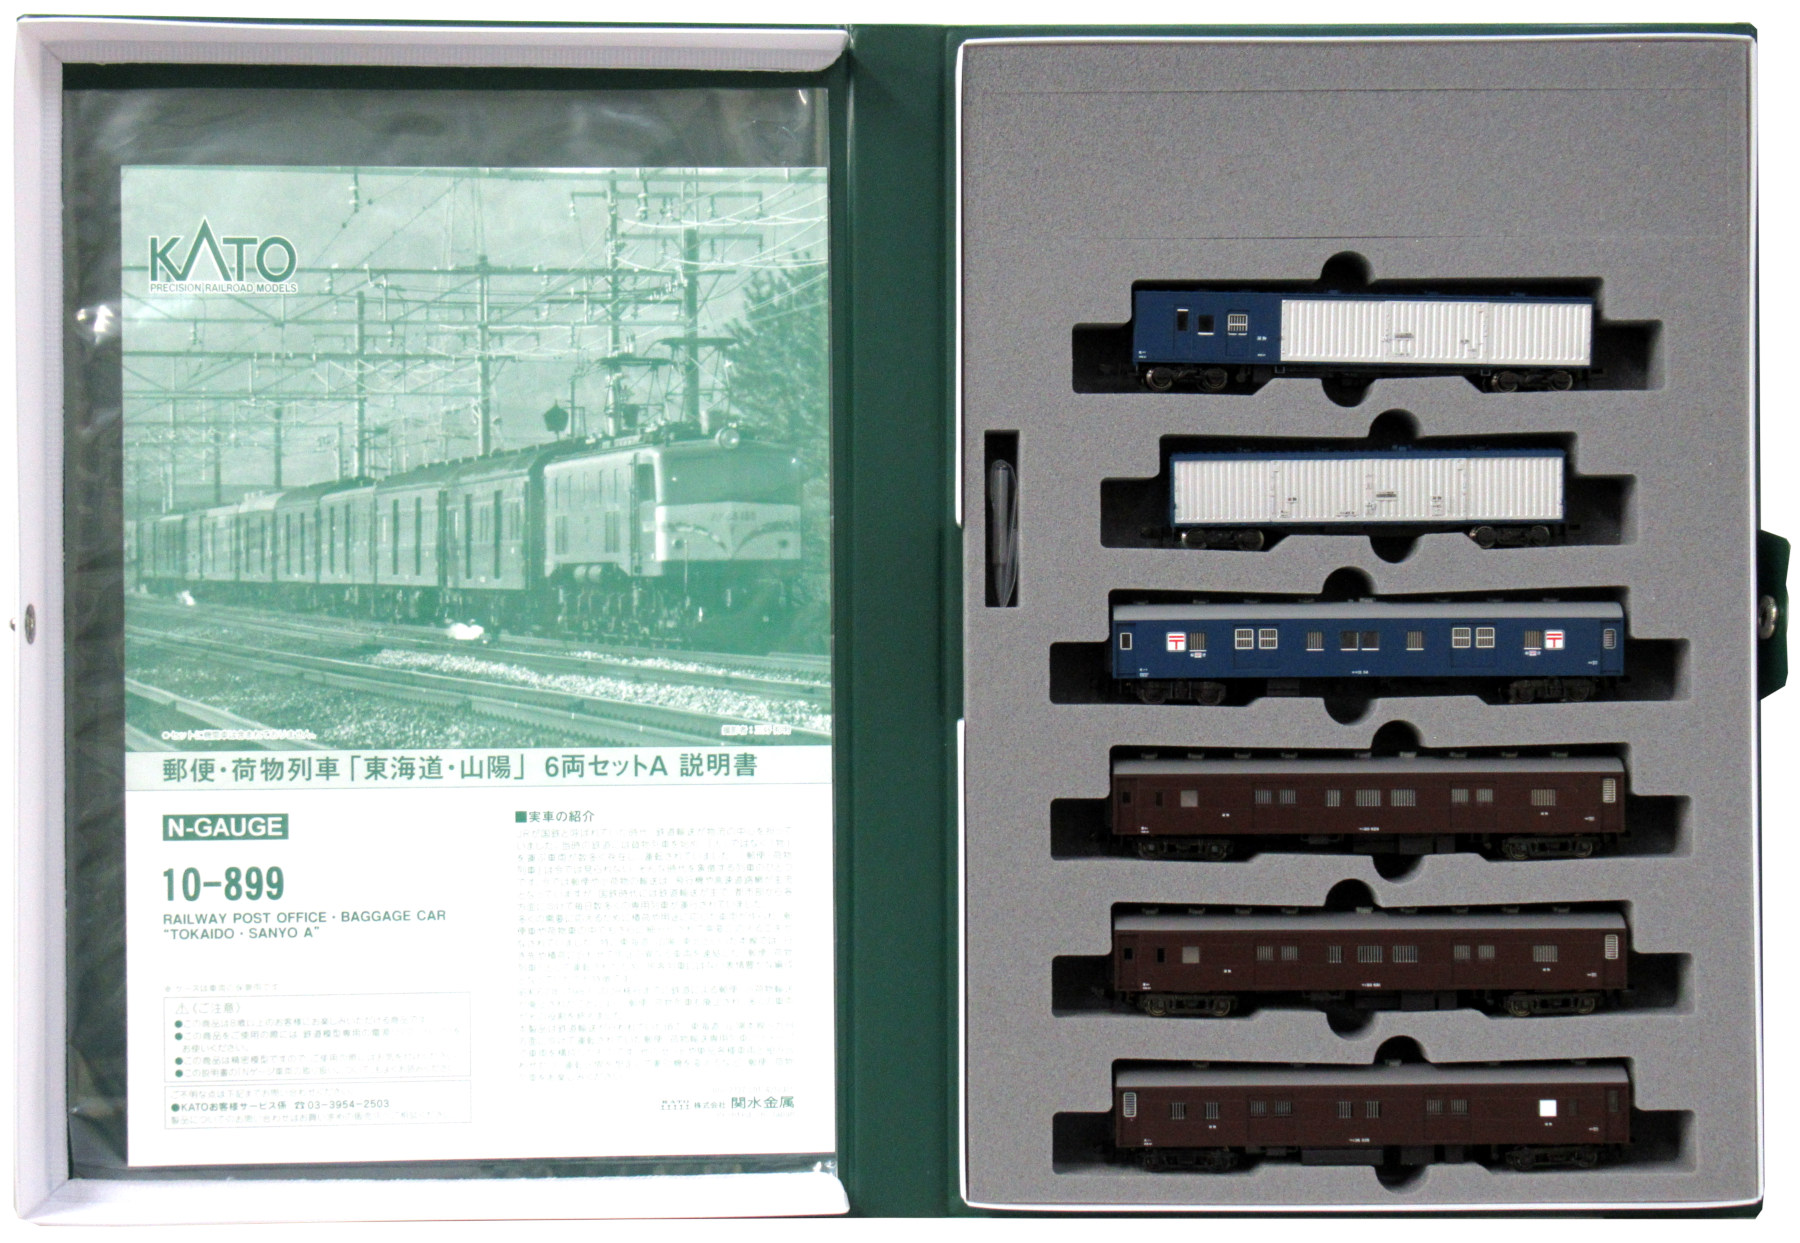 10-899 郵便荷物列車 東海道・山陽 A